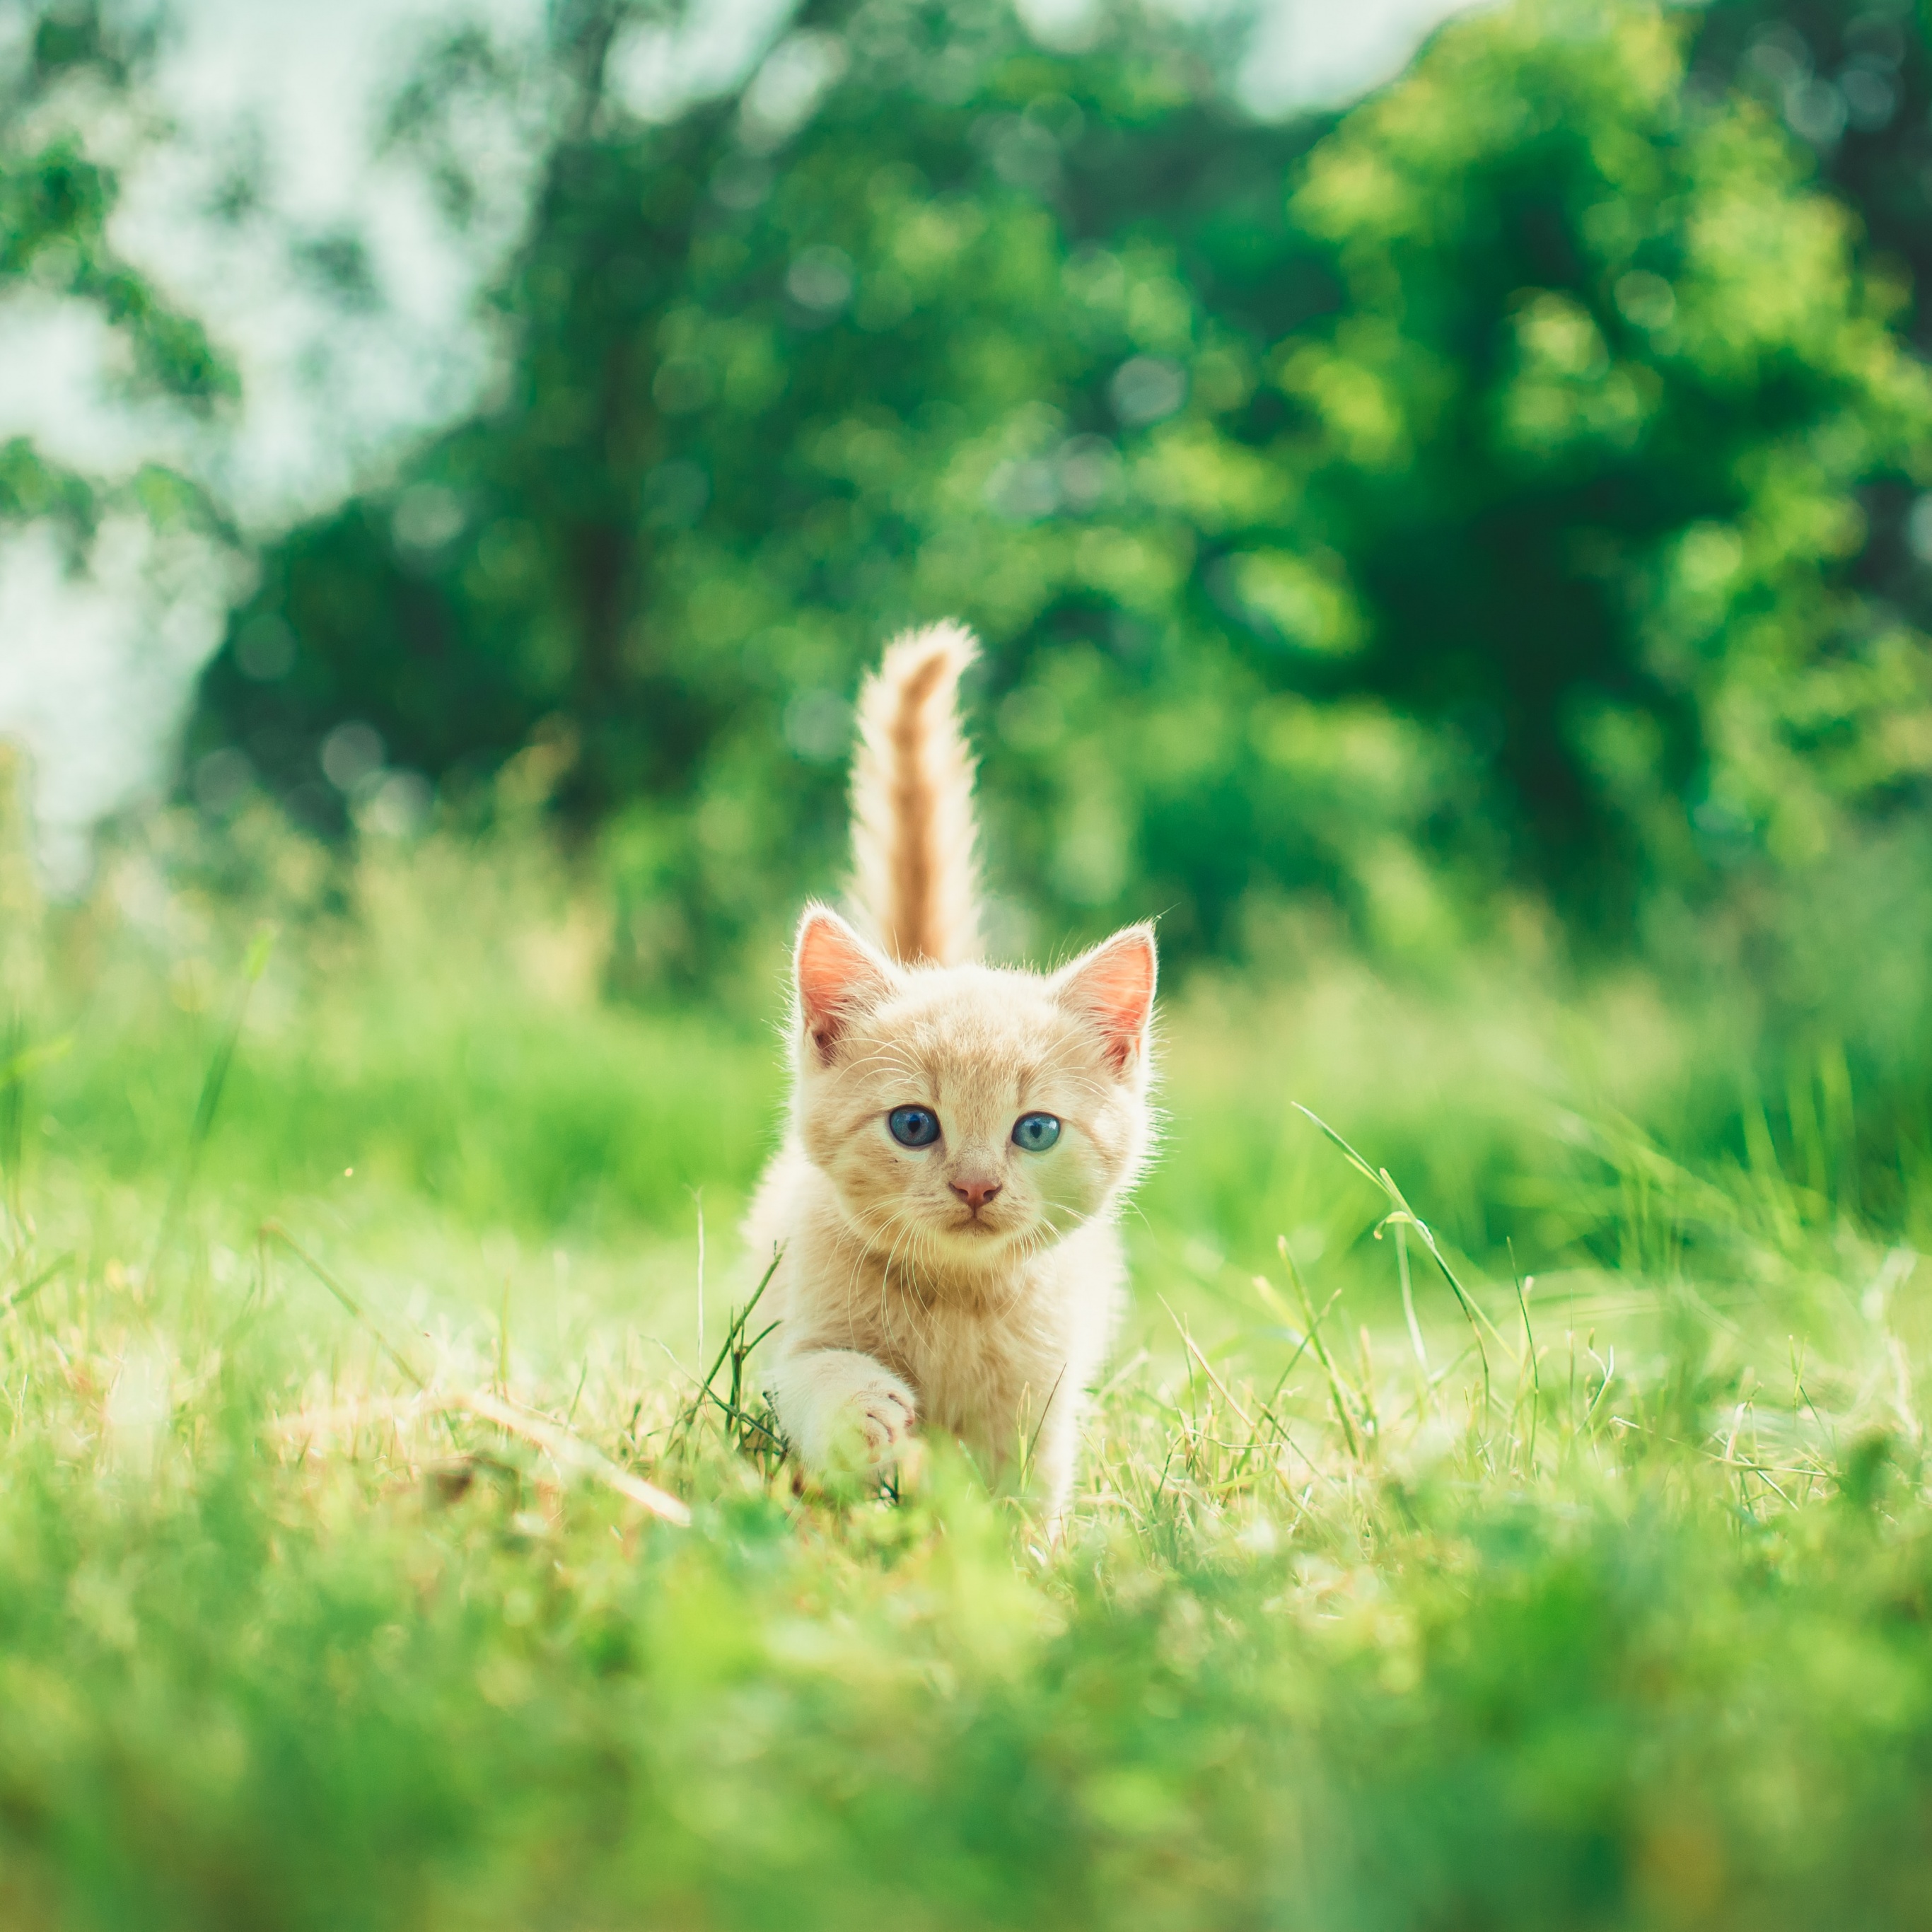 Chiêm ngưỡng bức ảnh động vật tuyệt đẹp với chú mèo con đang tung tăng chạy trên cỏ xanh mướt. Với độ phân giải 4K và mã số #4172, hình nền mèo con đáng yêu này đôi chút hoang dã sẽ khiến cho màn hình của bạn thêm phần sống động.